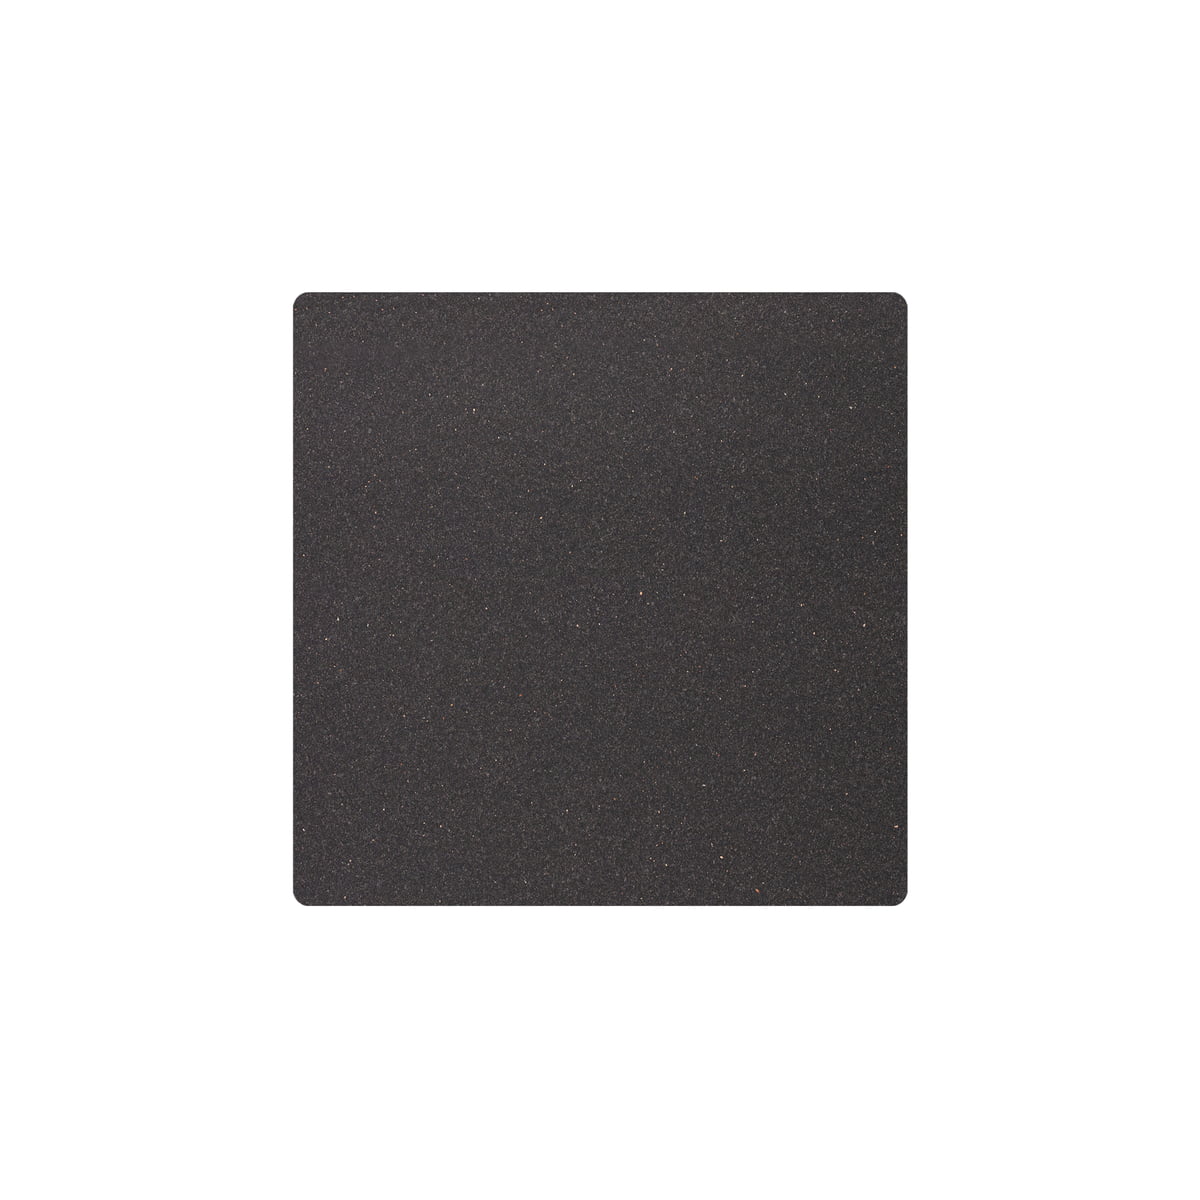 linddna - set de table square s 28 x 28 cm, core anthracite chiné